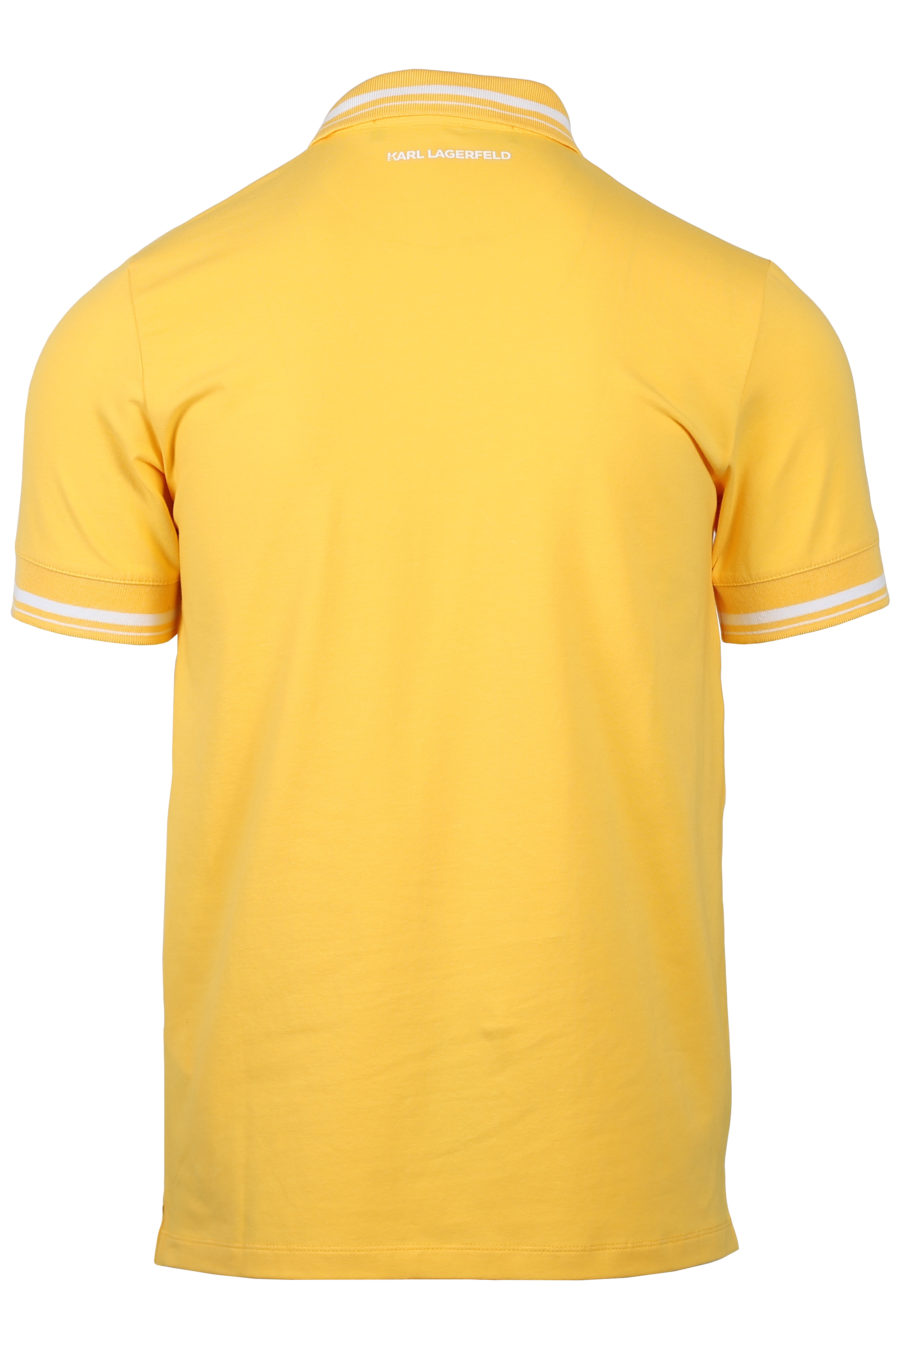 Polo shirt yellow logo white - IMG 2031